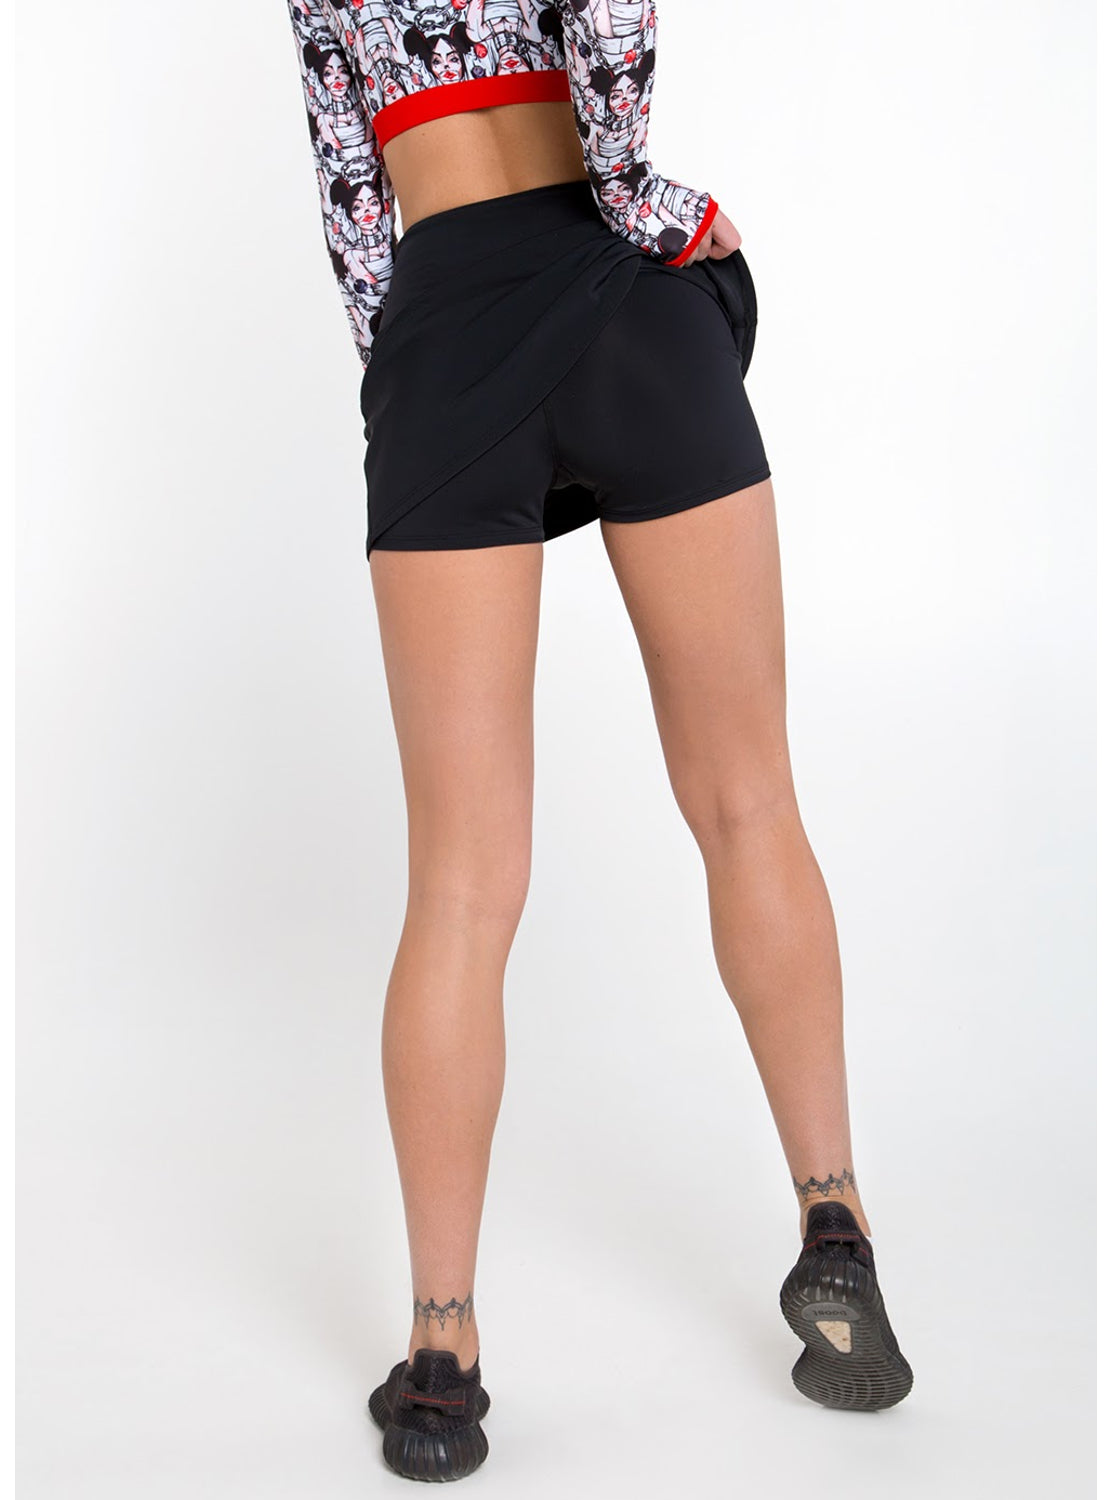 Joya Black Tennis Shorts Skirt